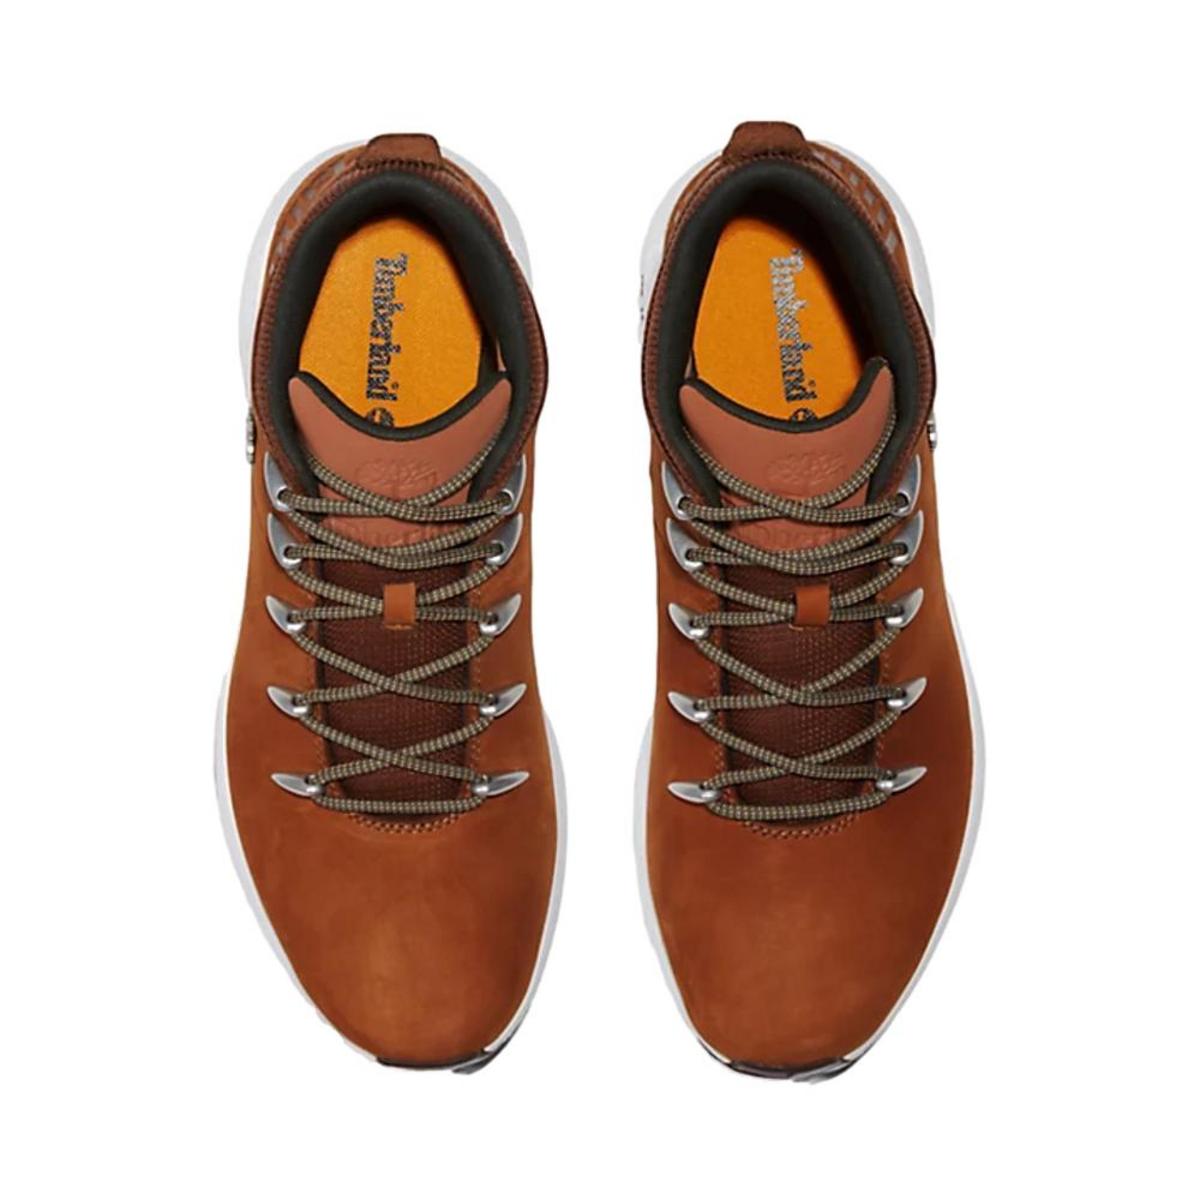 Boots TIMBERLAND marron en cuir nubuck - Baskets / Tennis Homme